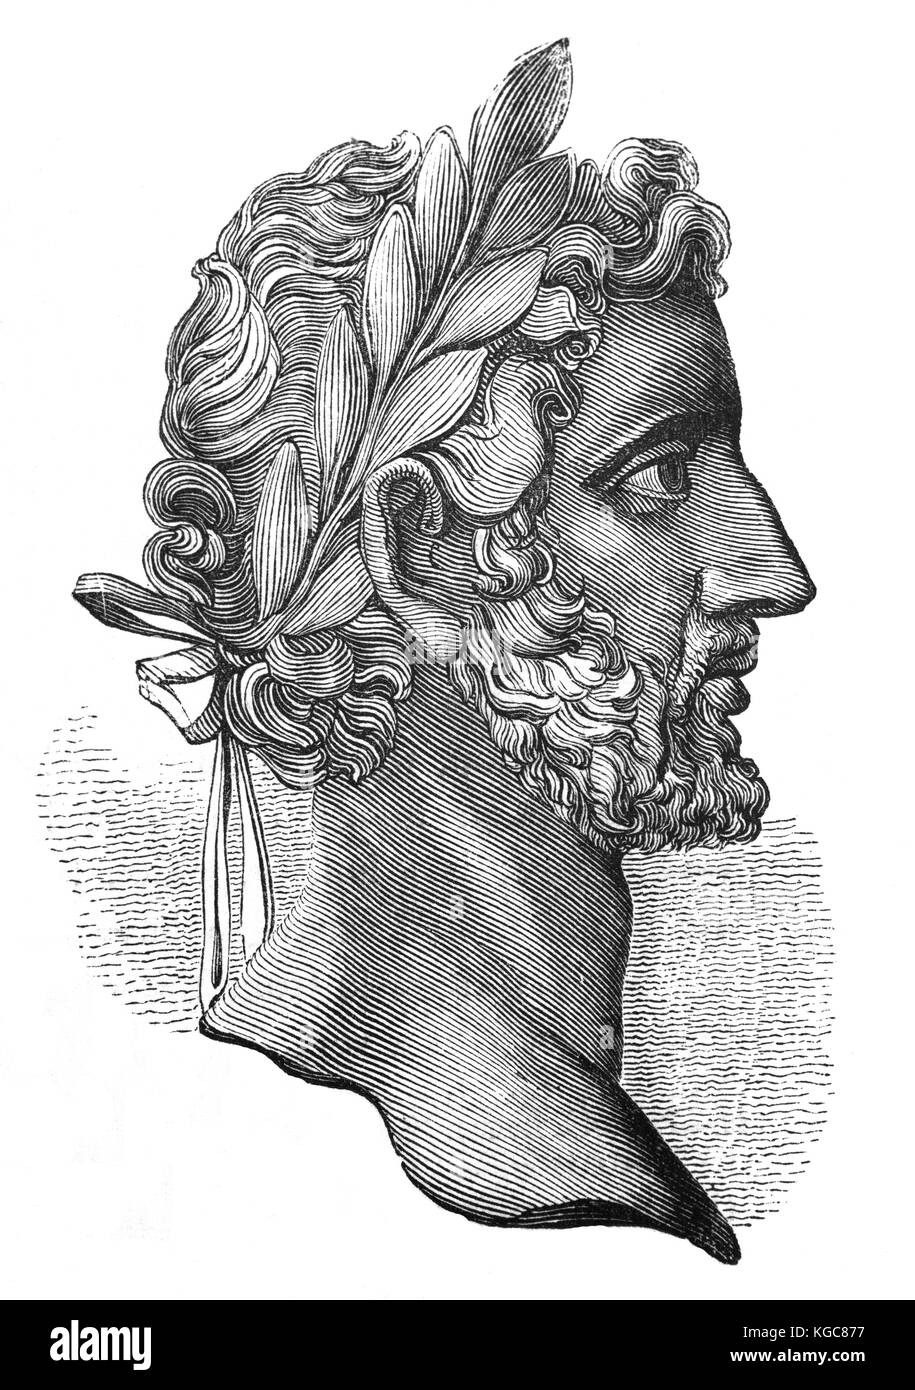 Antoninus Pius (86 - 161), auch bekannt als Antoninus, Römischer Kaiser von 138 bis 161. Seinen Adoptivvater war der Kaiser Hadrian, und er war einer der Fünf gute Kaiser in der Nerva - Antonine Dynastie und der Aurelii. Stockfoto